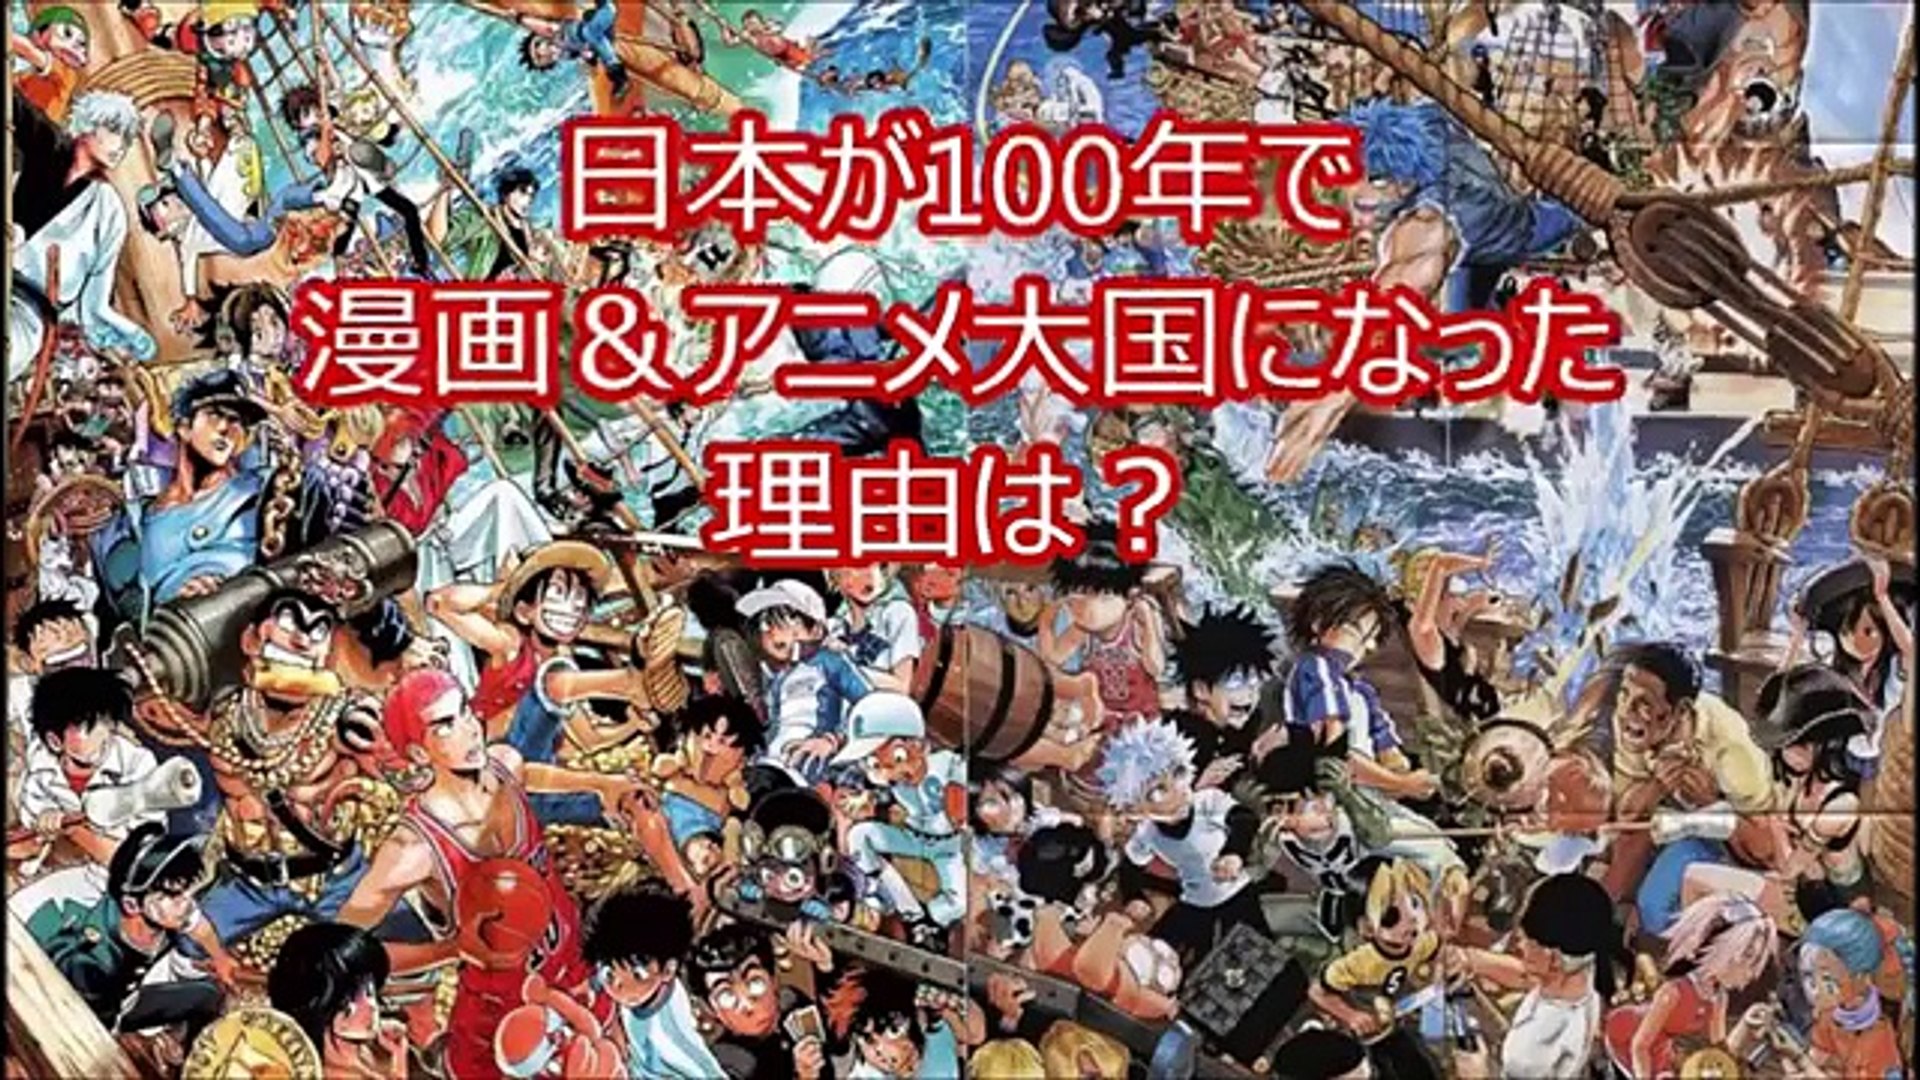 海外の反応 日本はなぜアニメ マンガ大国に100年程でなったのか 外国で話題に Video Dailymotion